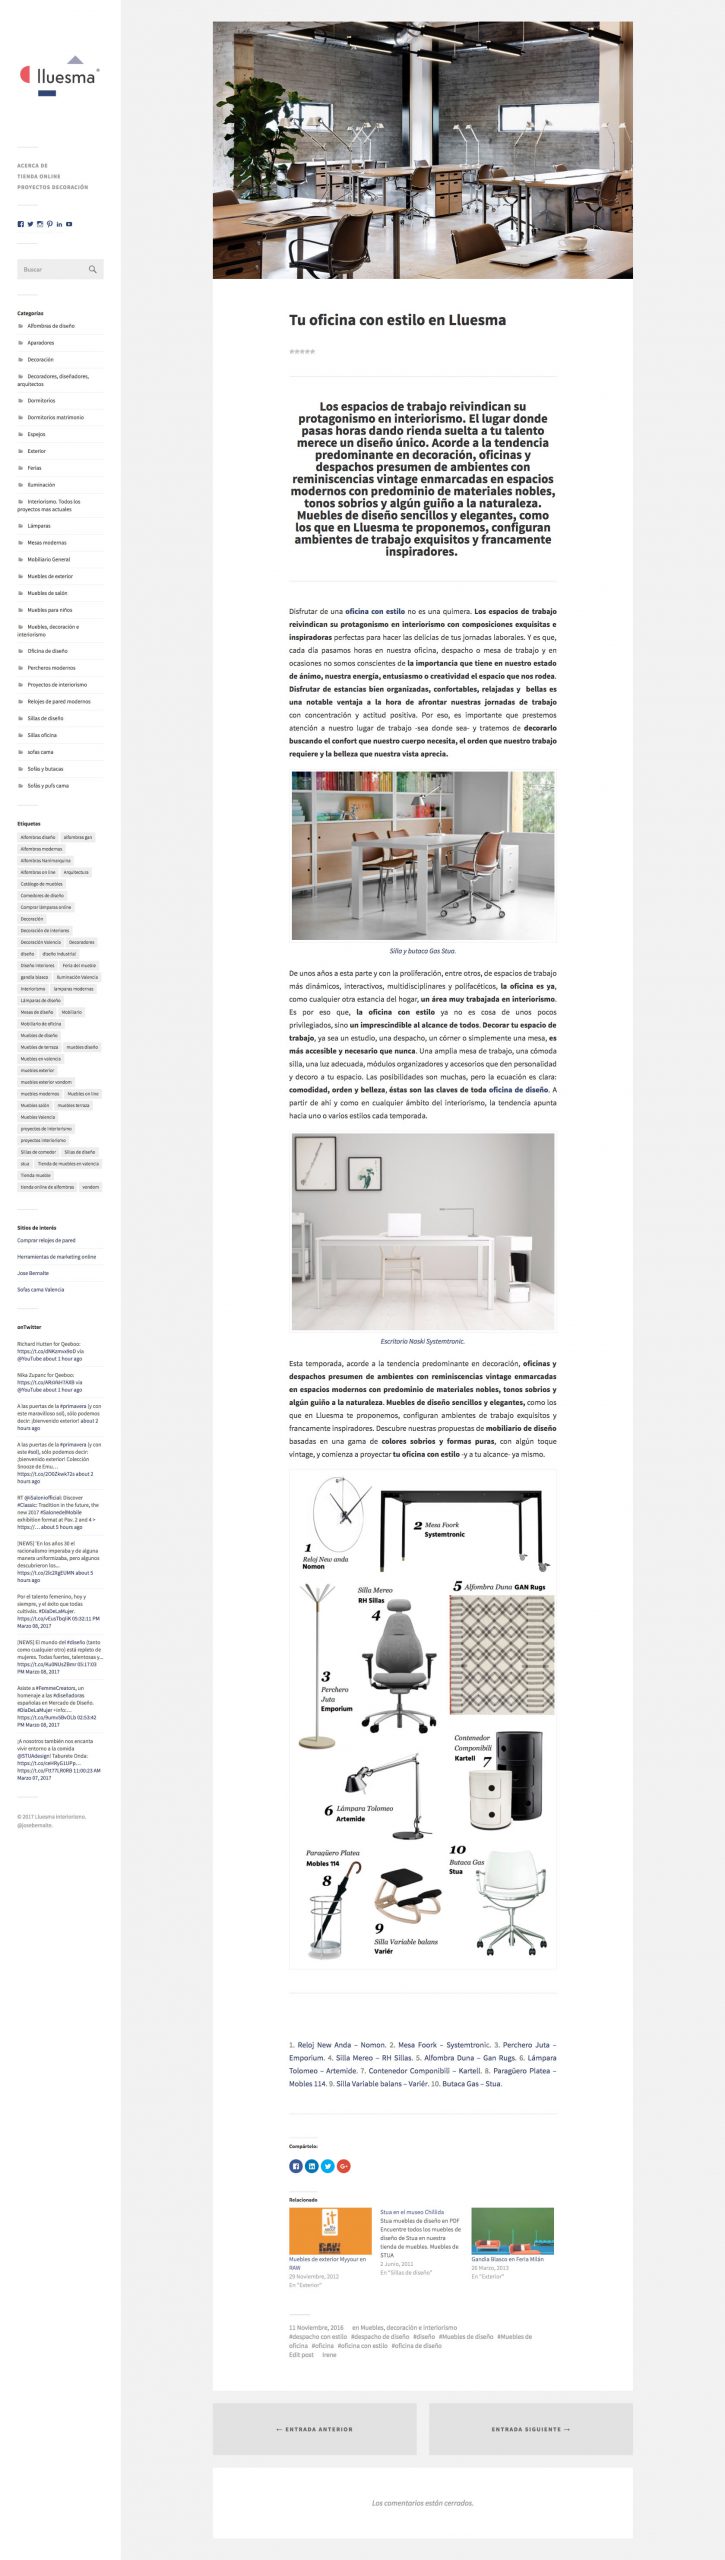 Diseño de pagina web blog artículo con fotos